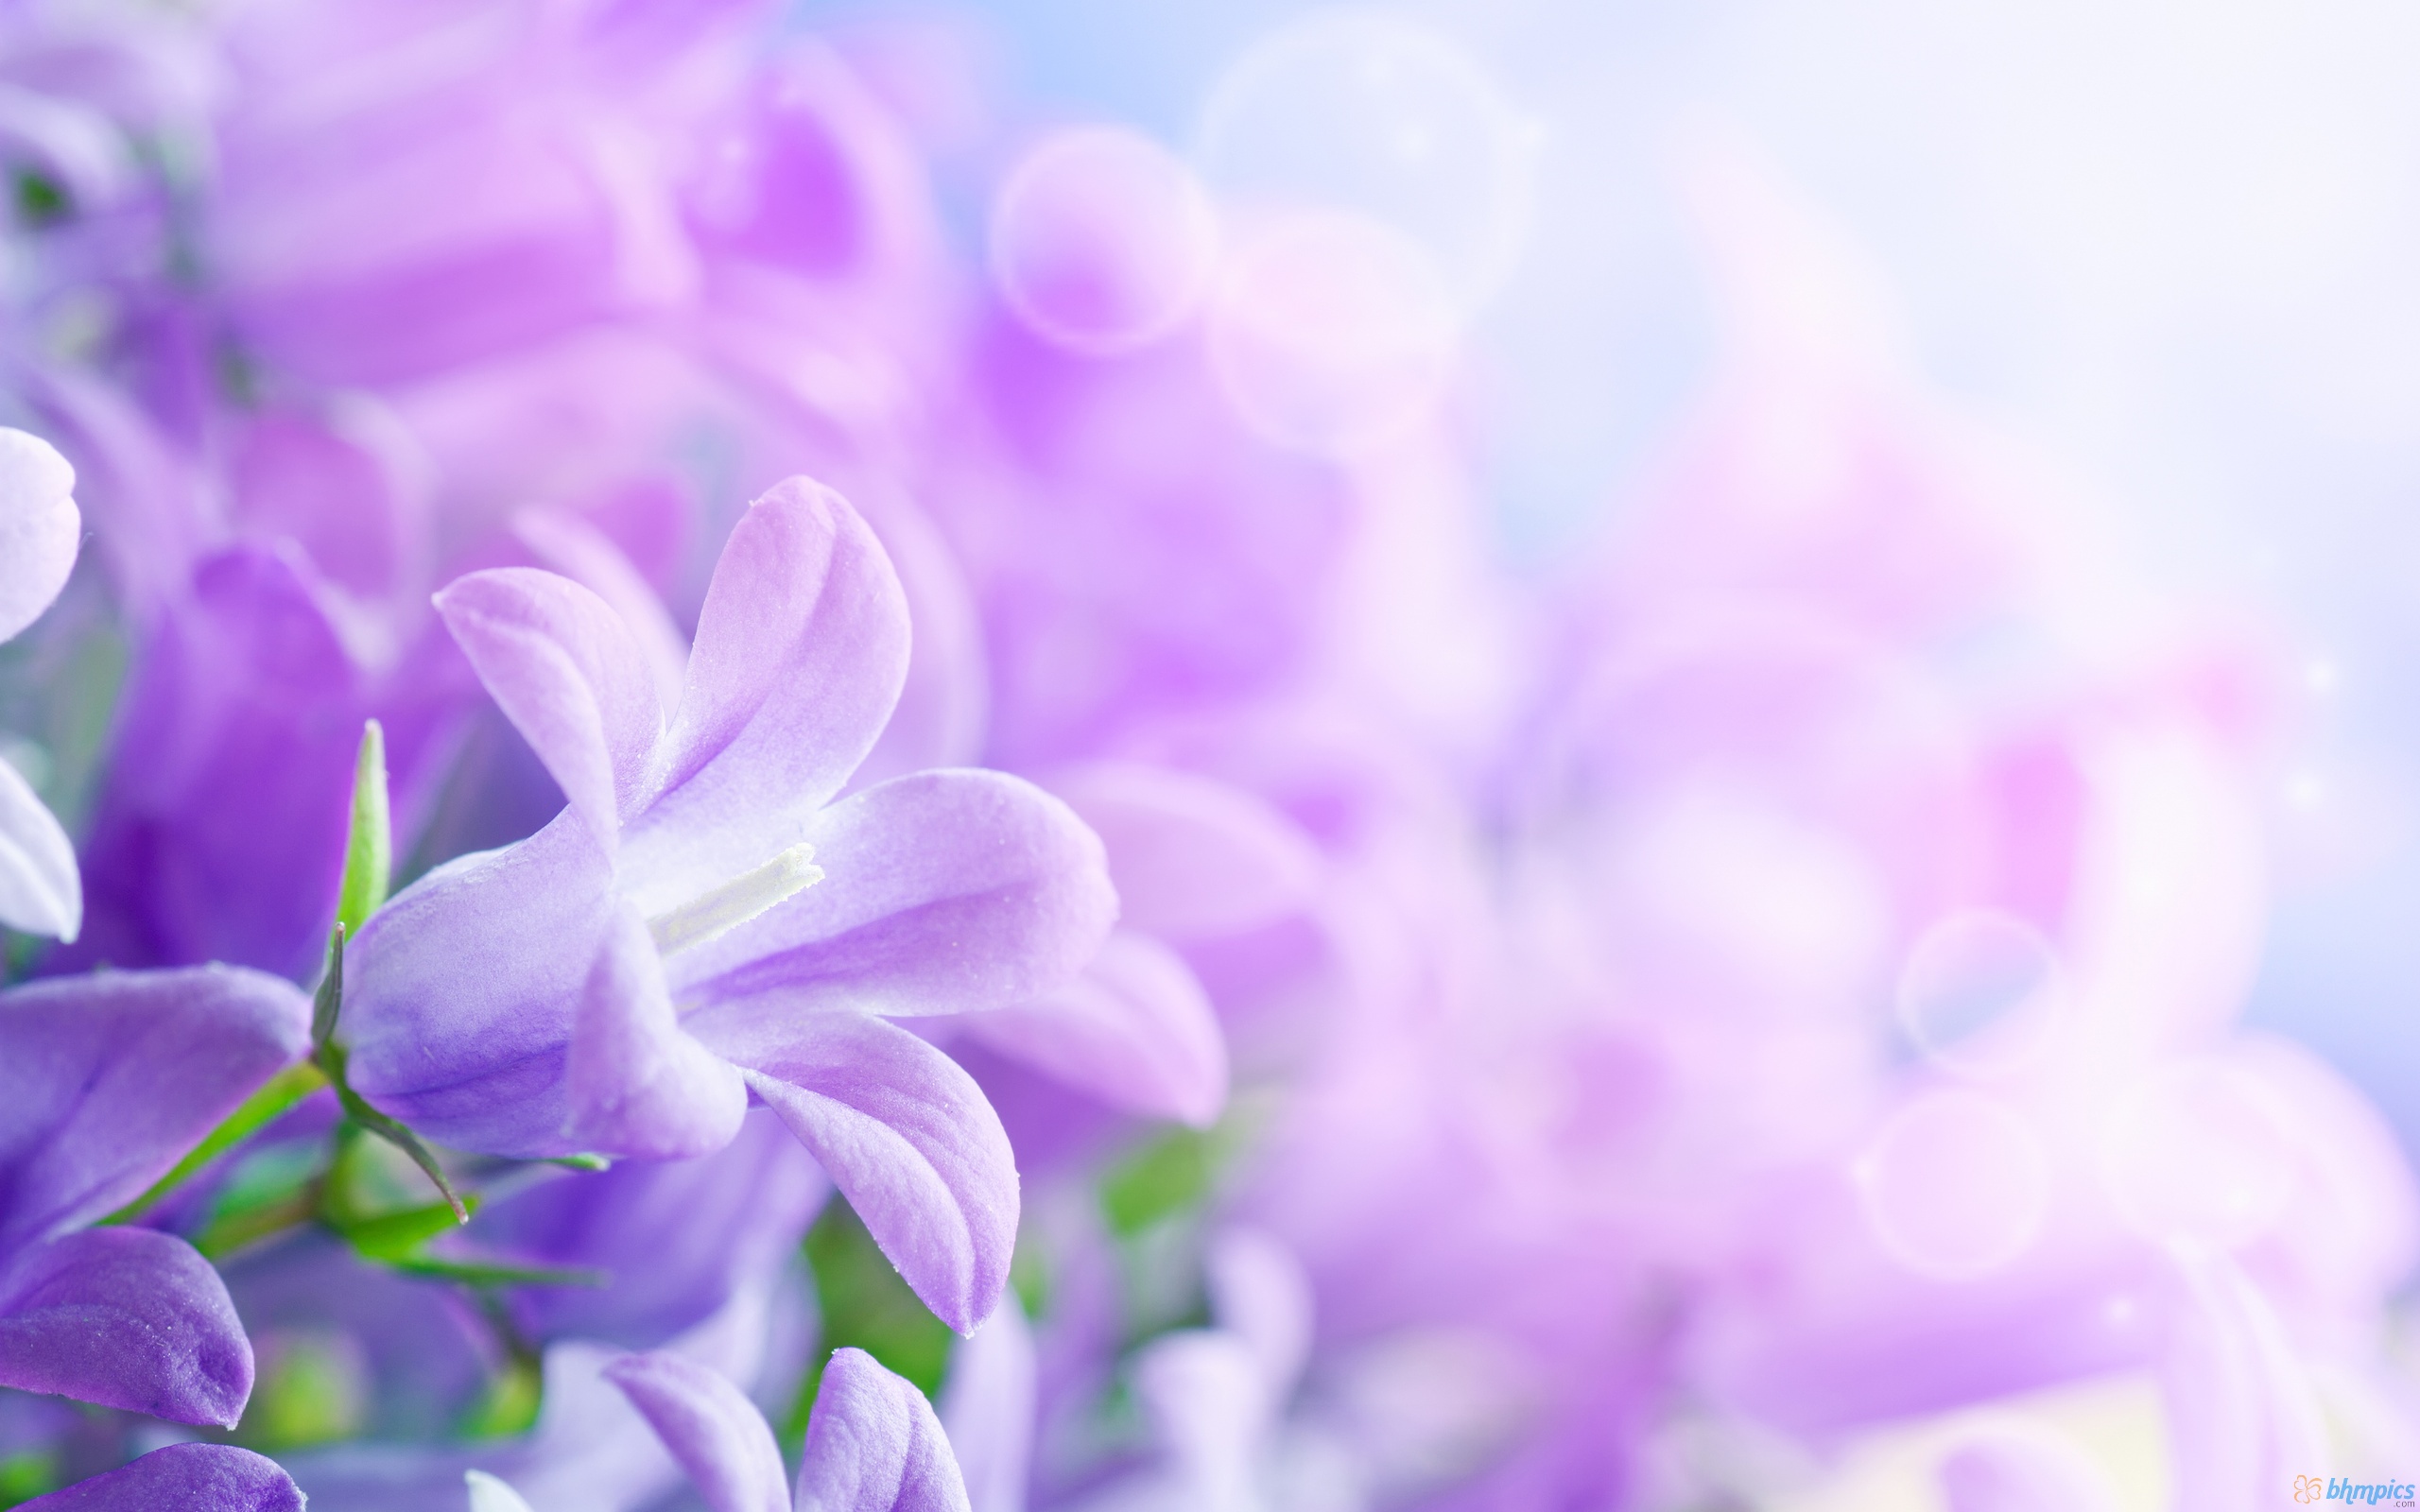 Yêu thích màu hồng và hoa dâli-ya? Đừng bỏ qua bộ sưu tập hình nền Gallery Windows 7 Pink Dahlia Flowers, với những bức ảnh hoa đầy màu sắc và sự tinh tế trong thiết kế. Hãy sử dụng nó làm hình nền và thư giãn mỗi khi nhìn vào màn hình của bạn.